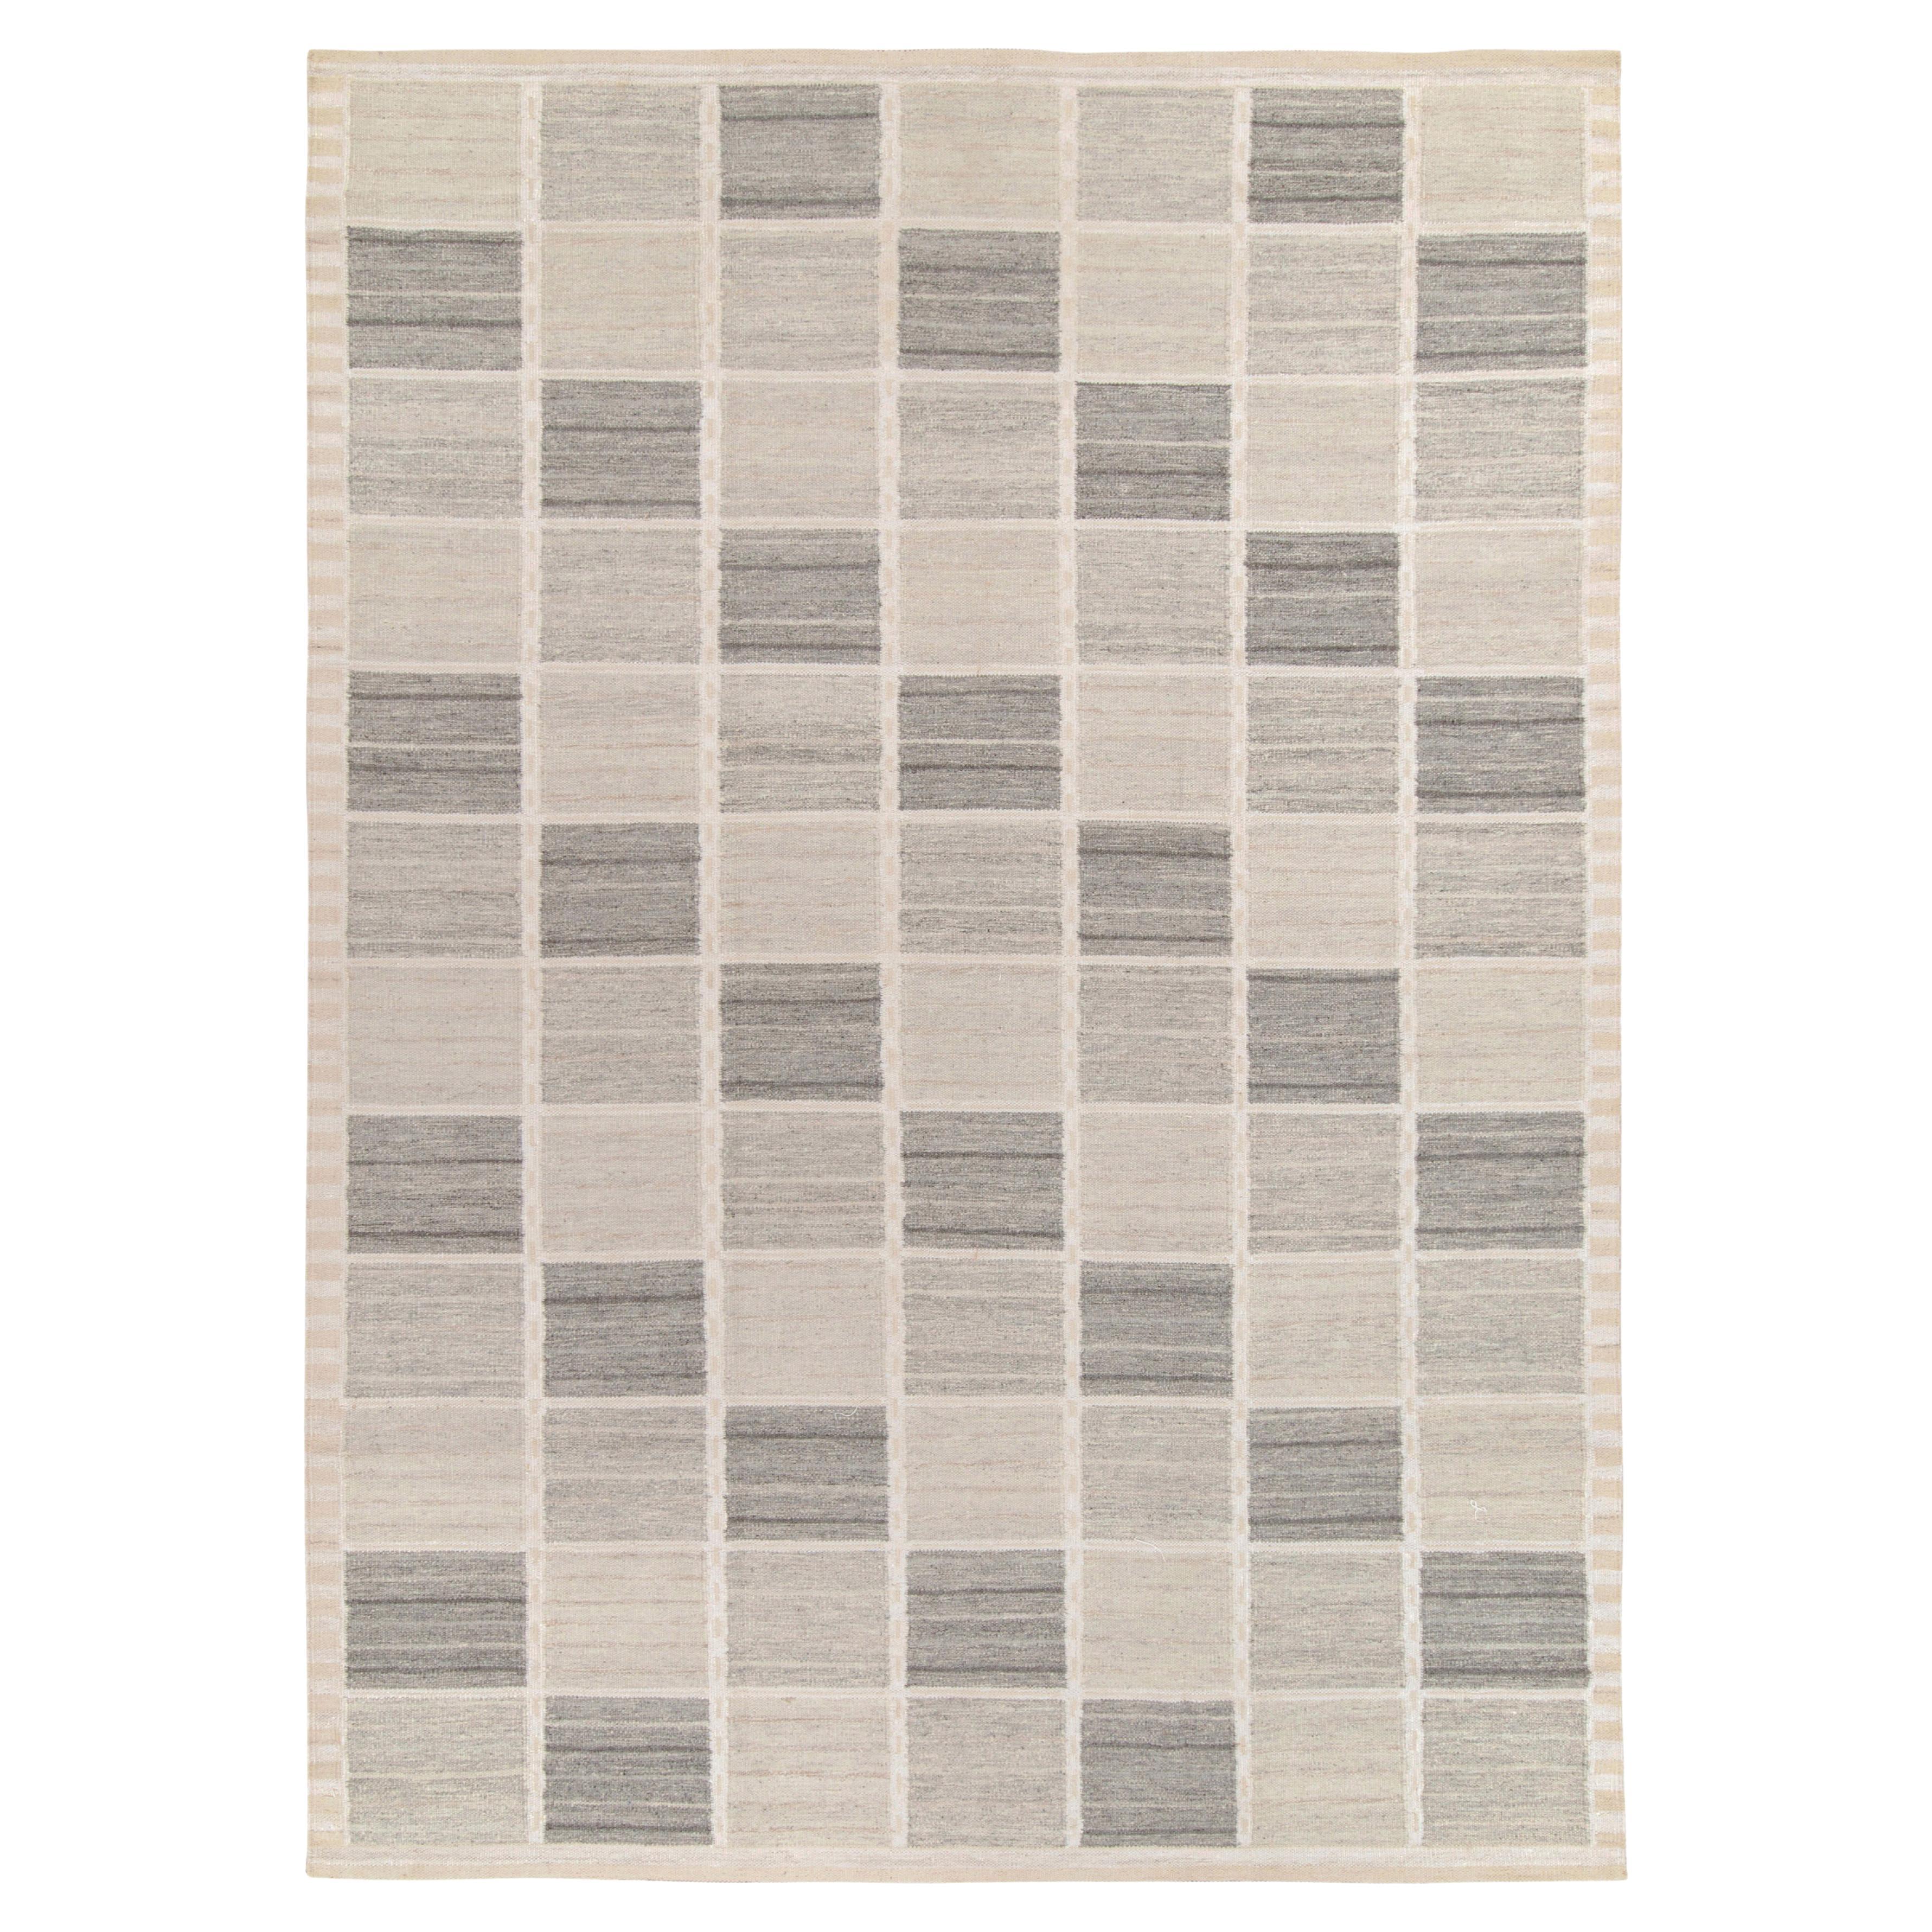 Teppich & Kelim-Teppich im skandinavischen Stil in Grau, Off-White mit geometrischem Muster